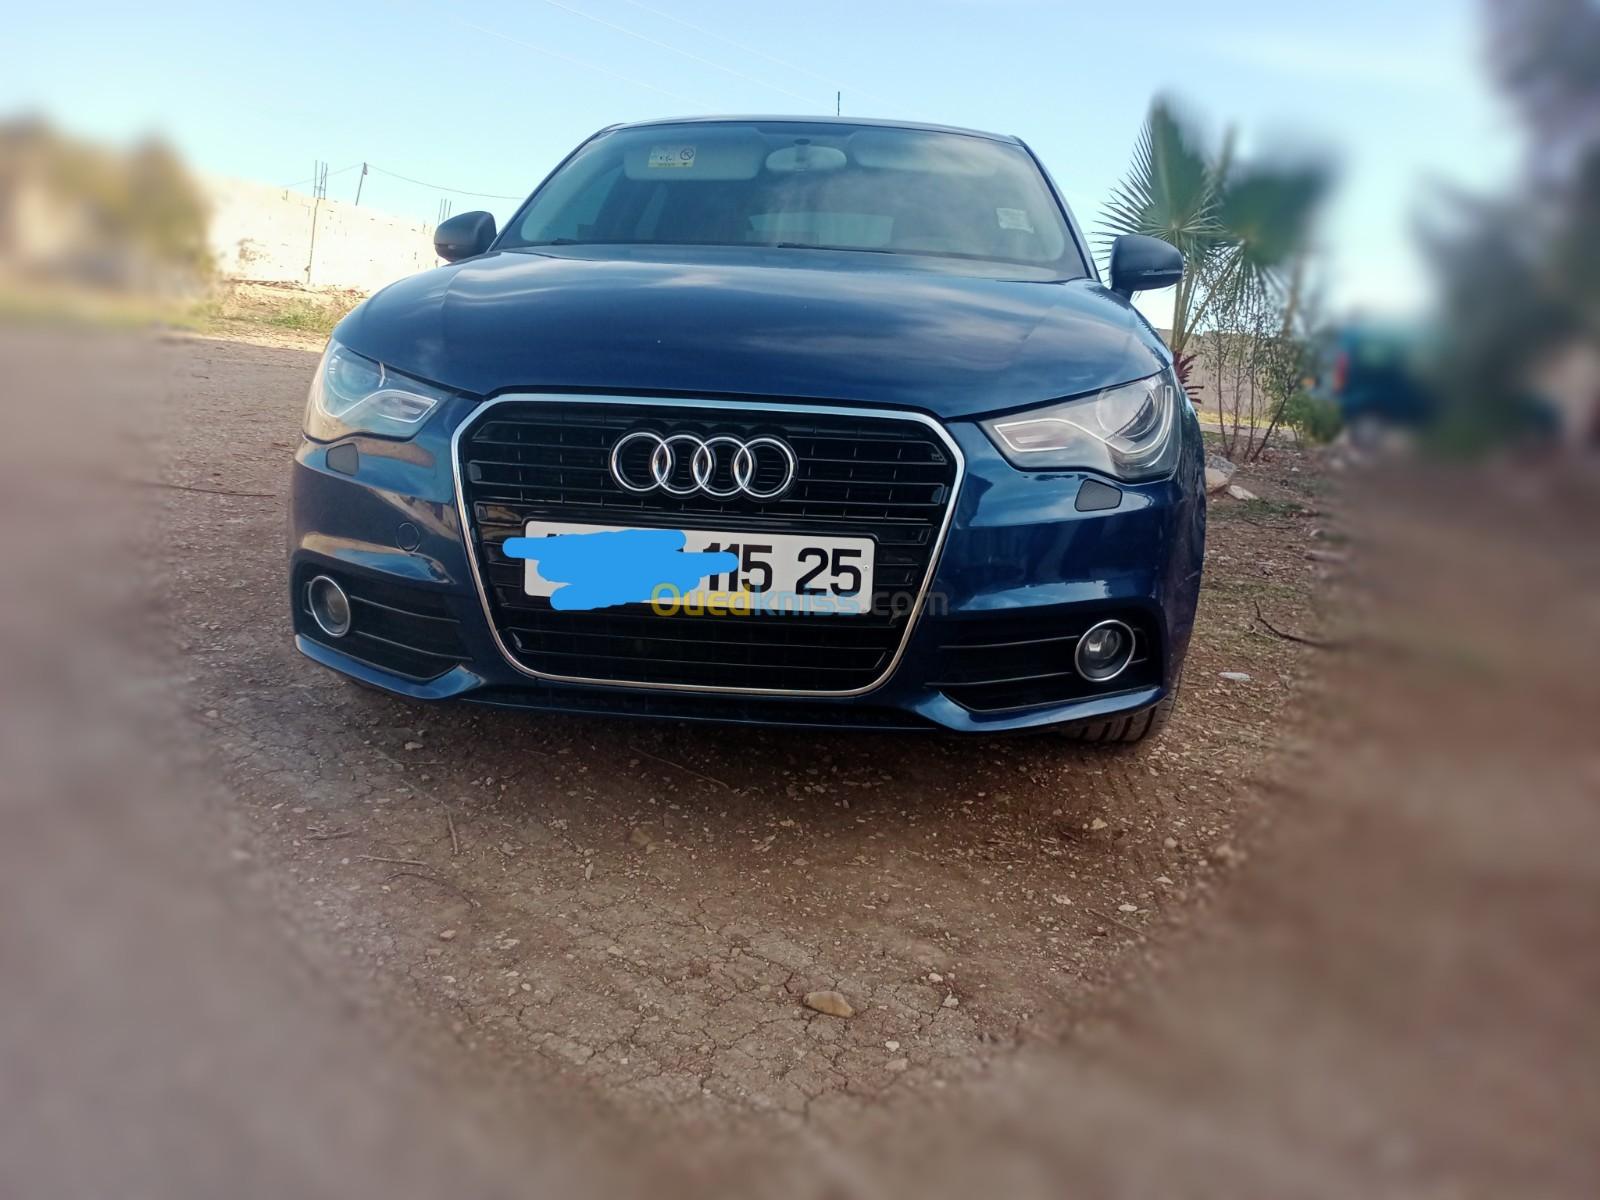 Audi A1 2015 S Line